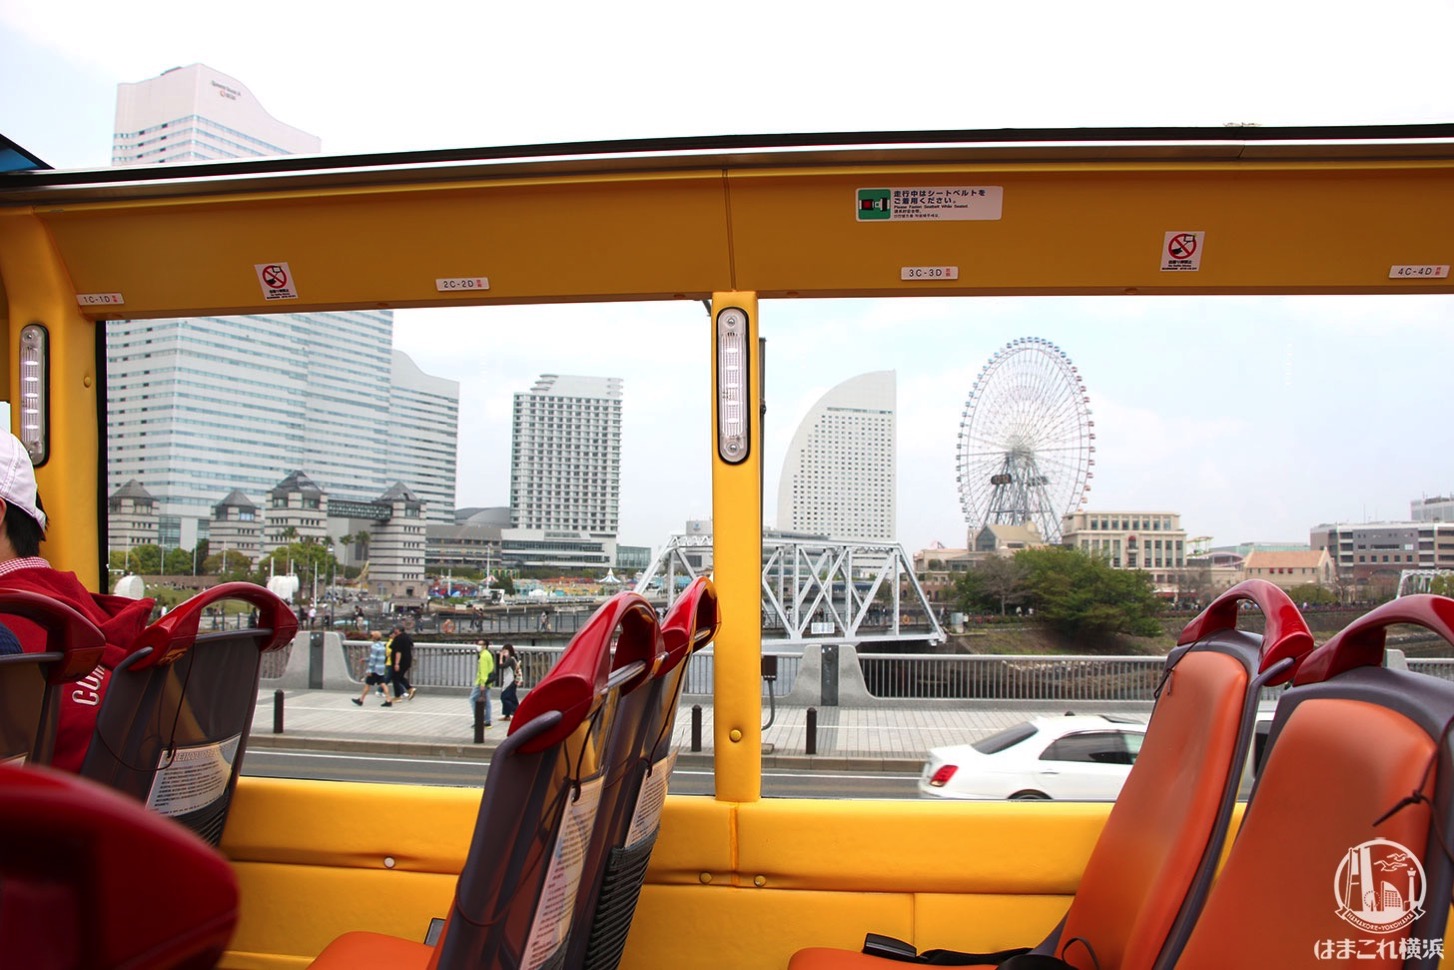 オープントップバスから見たバス車内とみなとみらいの景観